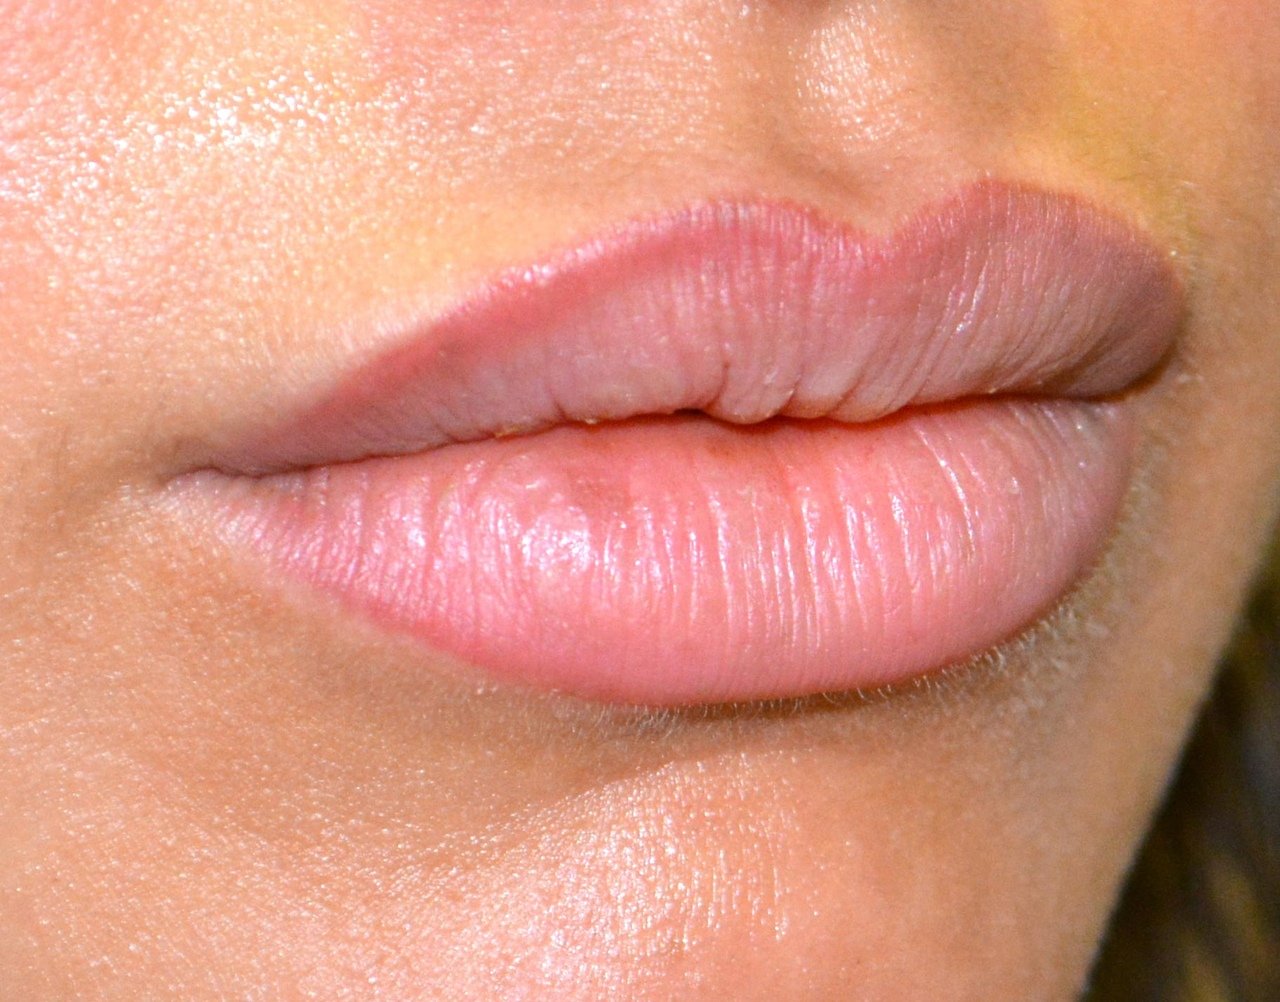 Естественный перманентный макияж губ